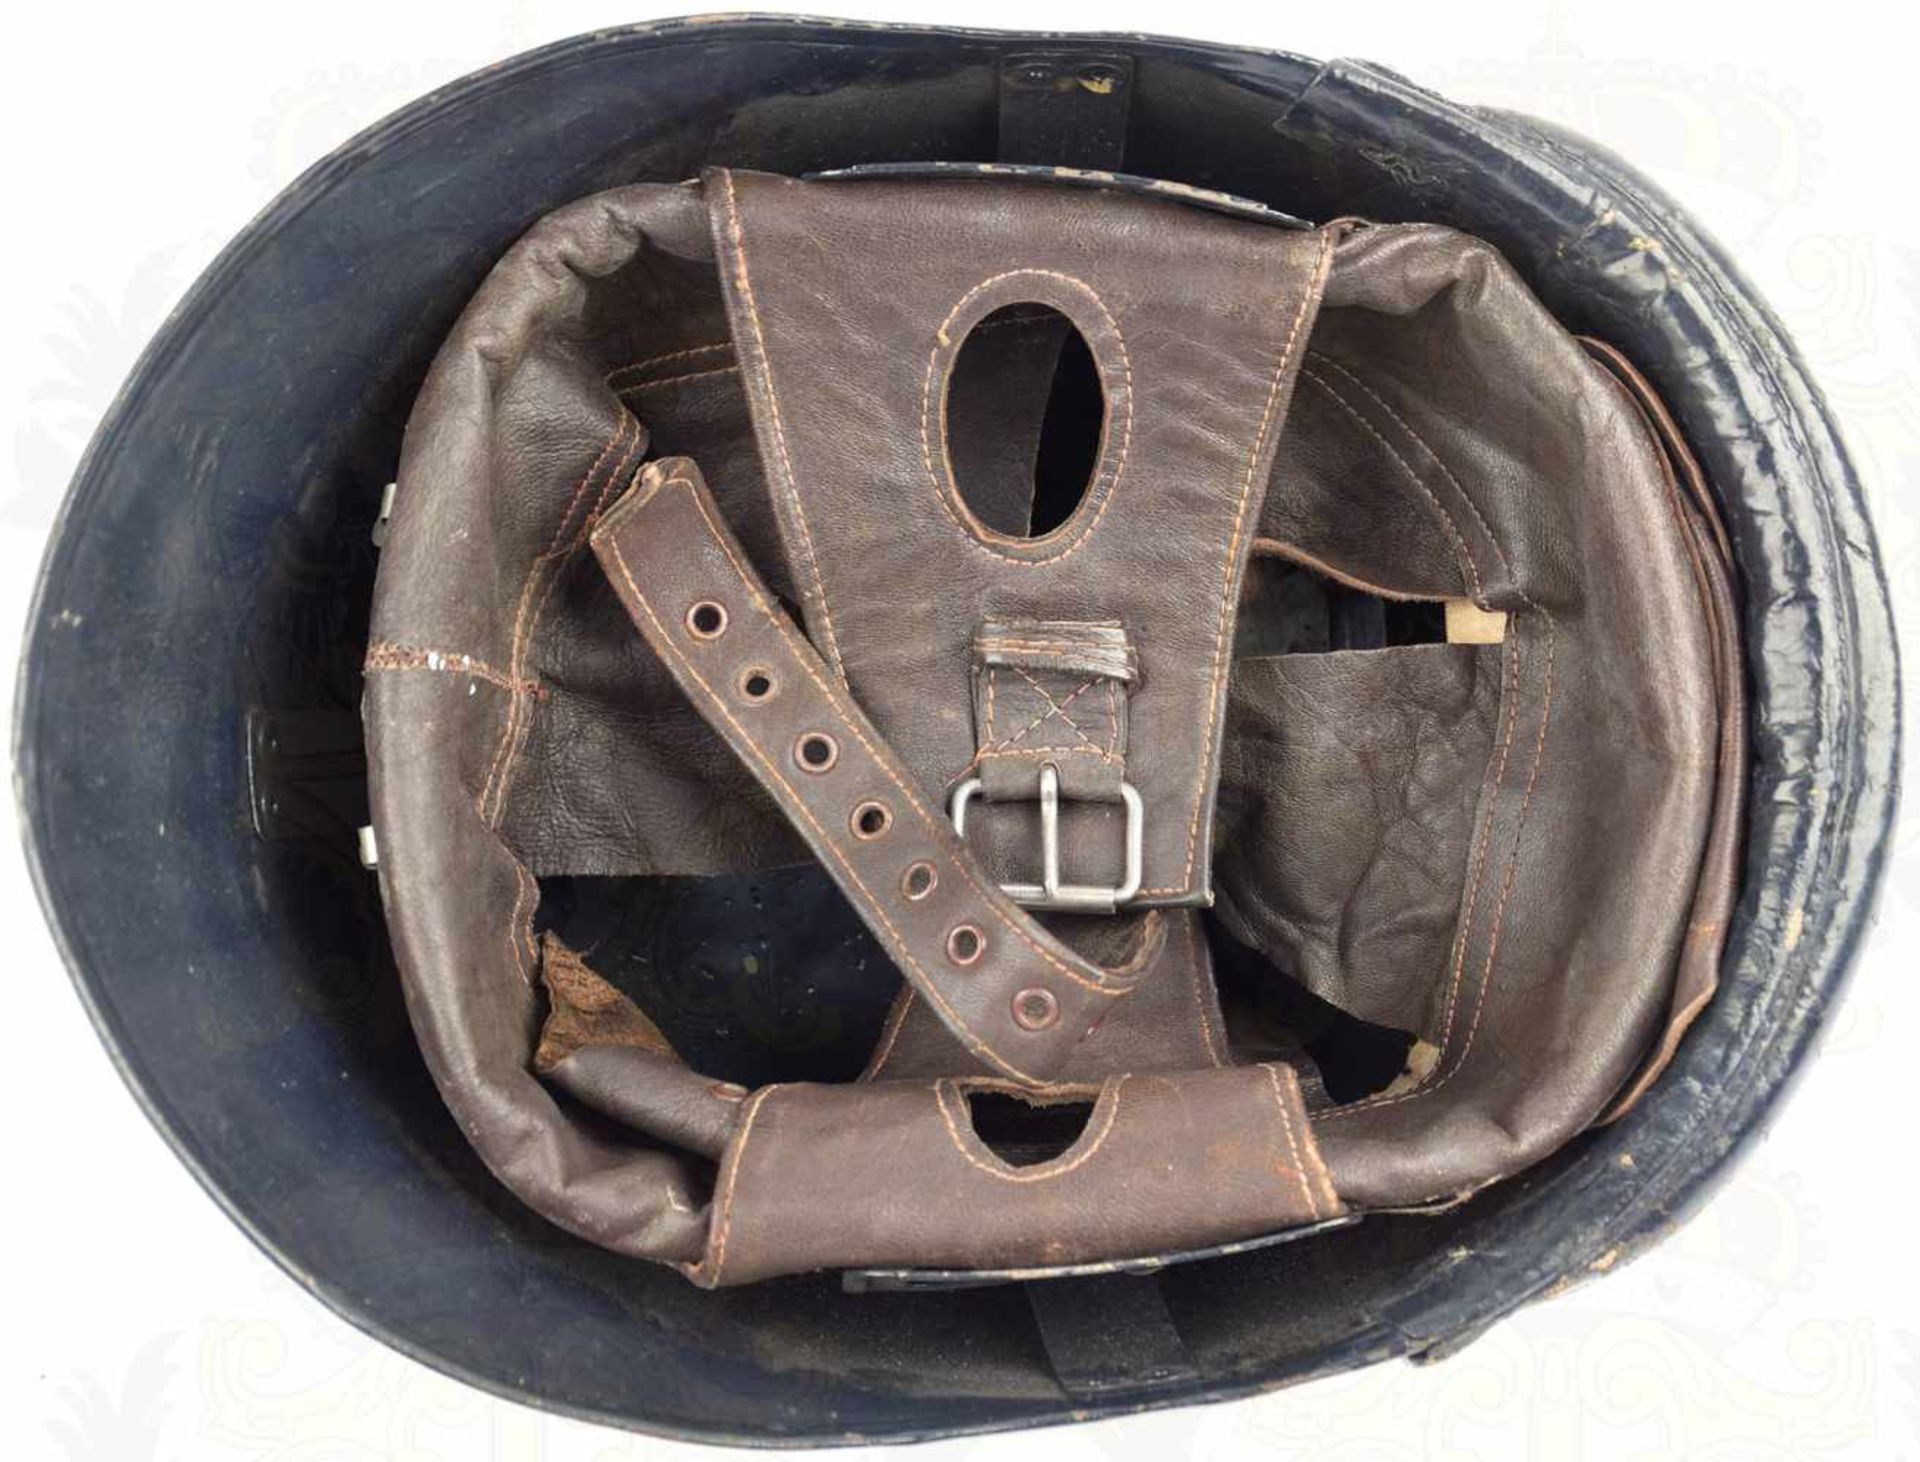 STAHLHELM M 35 FÜR PANZERBESATZUNGEN, ältere Sammleranfertigung, unmagnetische Glocke, schwarz - Bild 4 aus 4